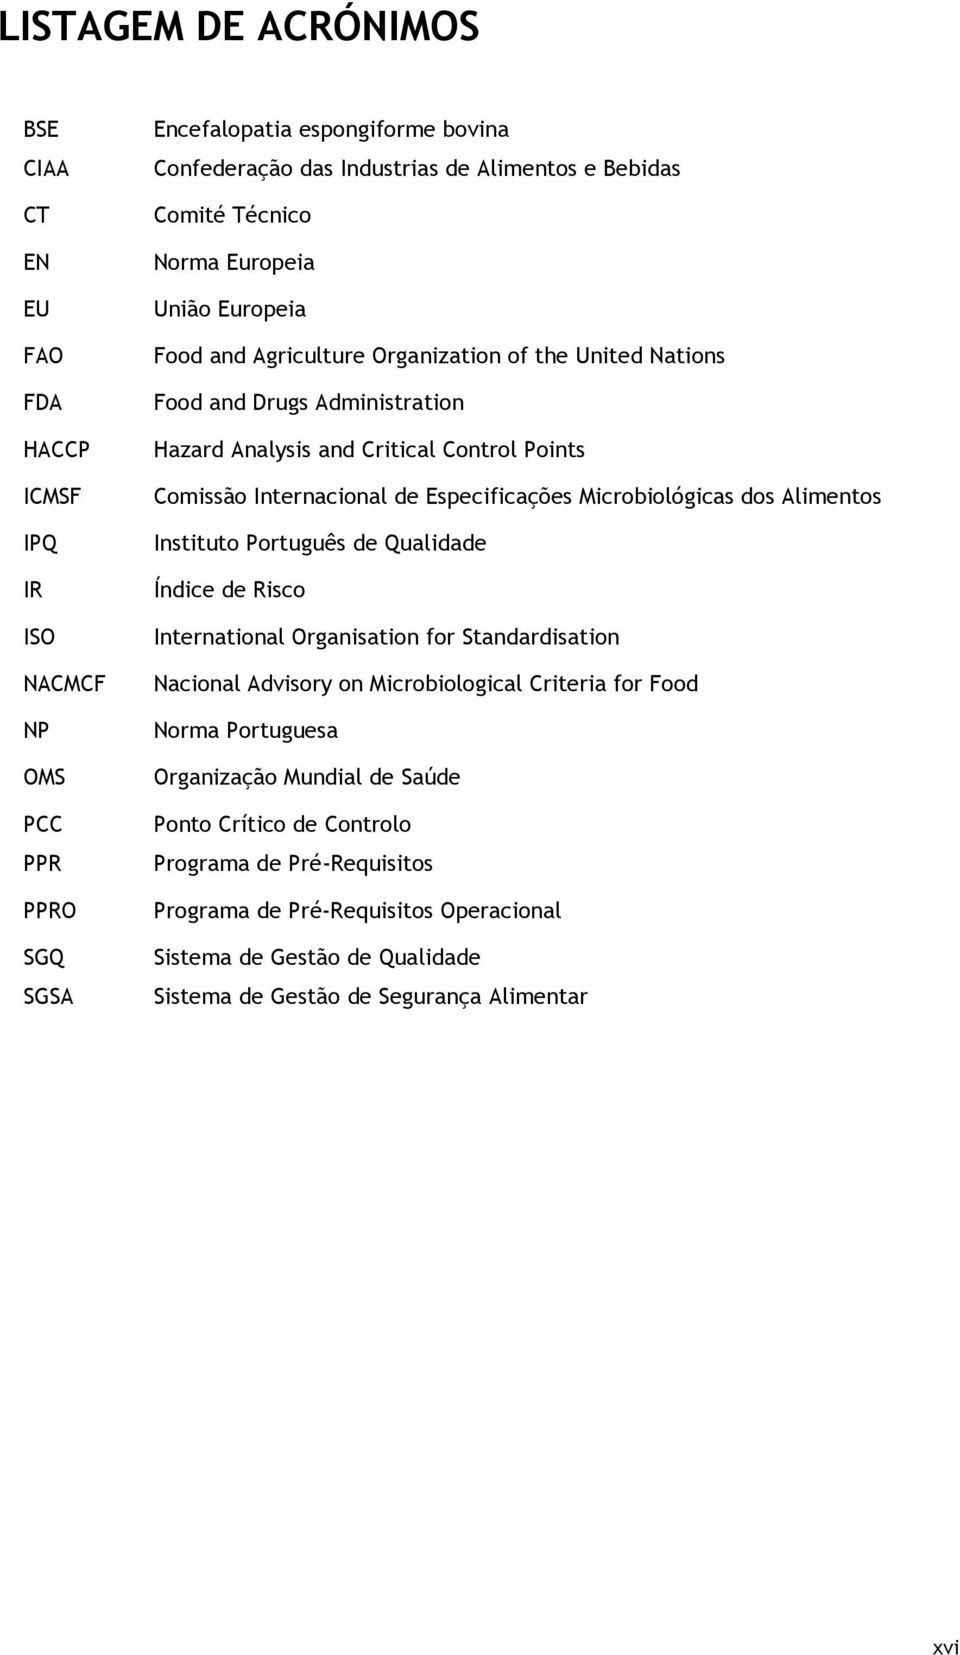 Especificações Microbiológicas dos Alimentos Instituto Português de Qualidade Índice de Risco International Organisation for Standardisation Nacional Advisory on Microbiological Criteria for Food